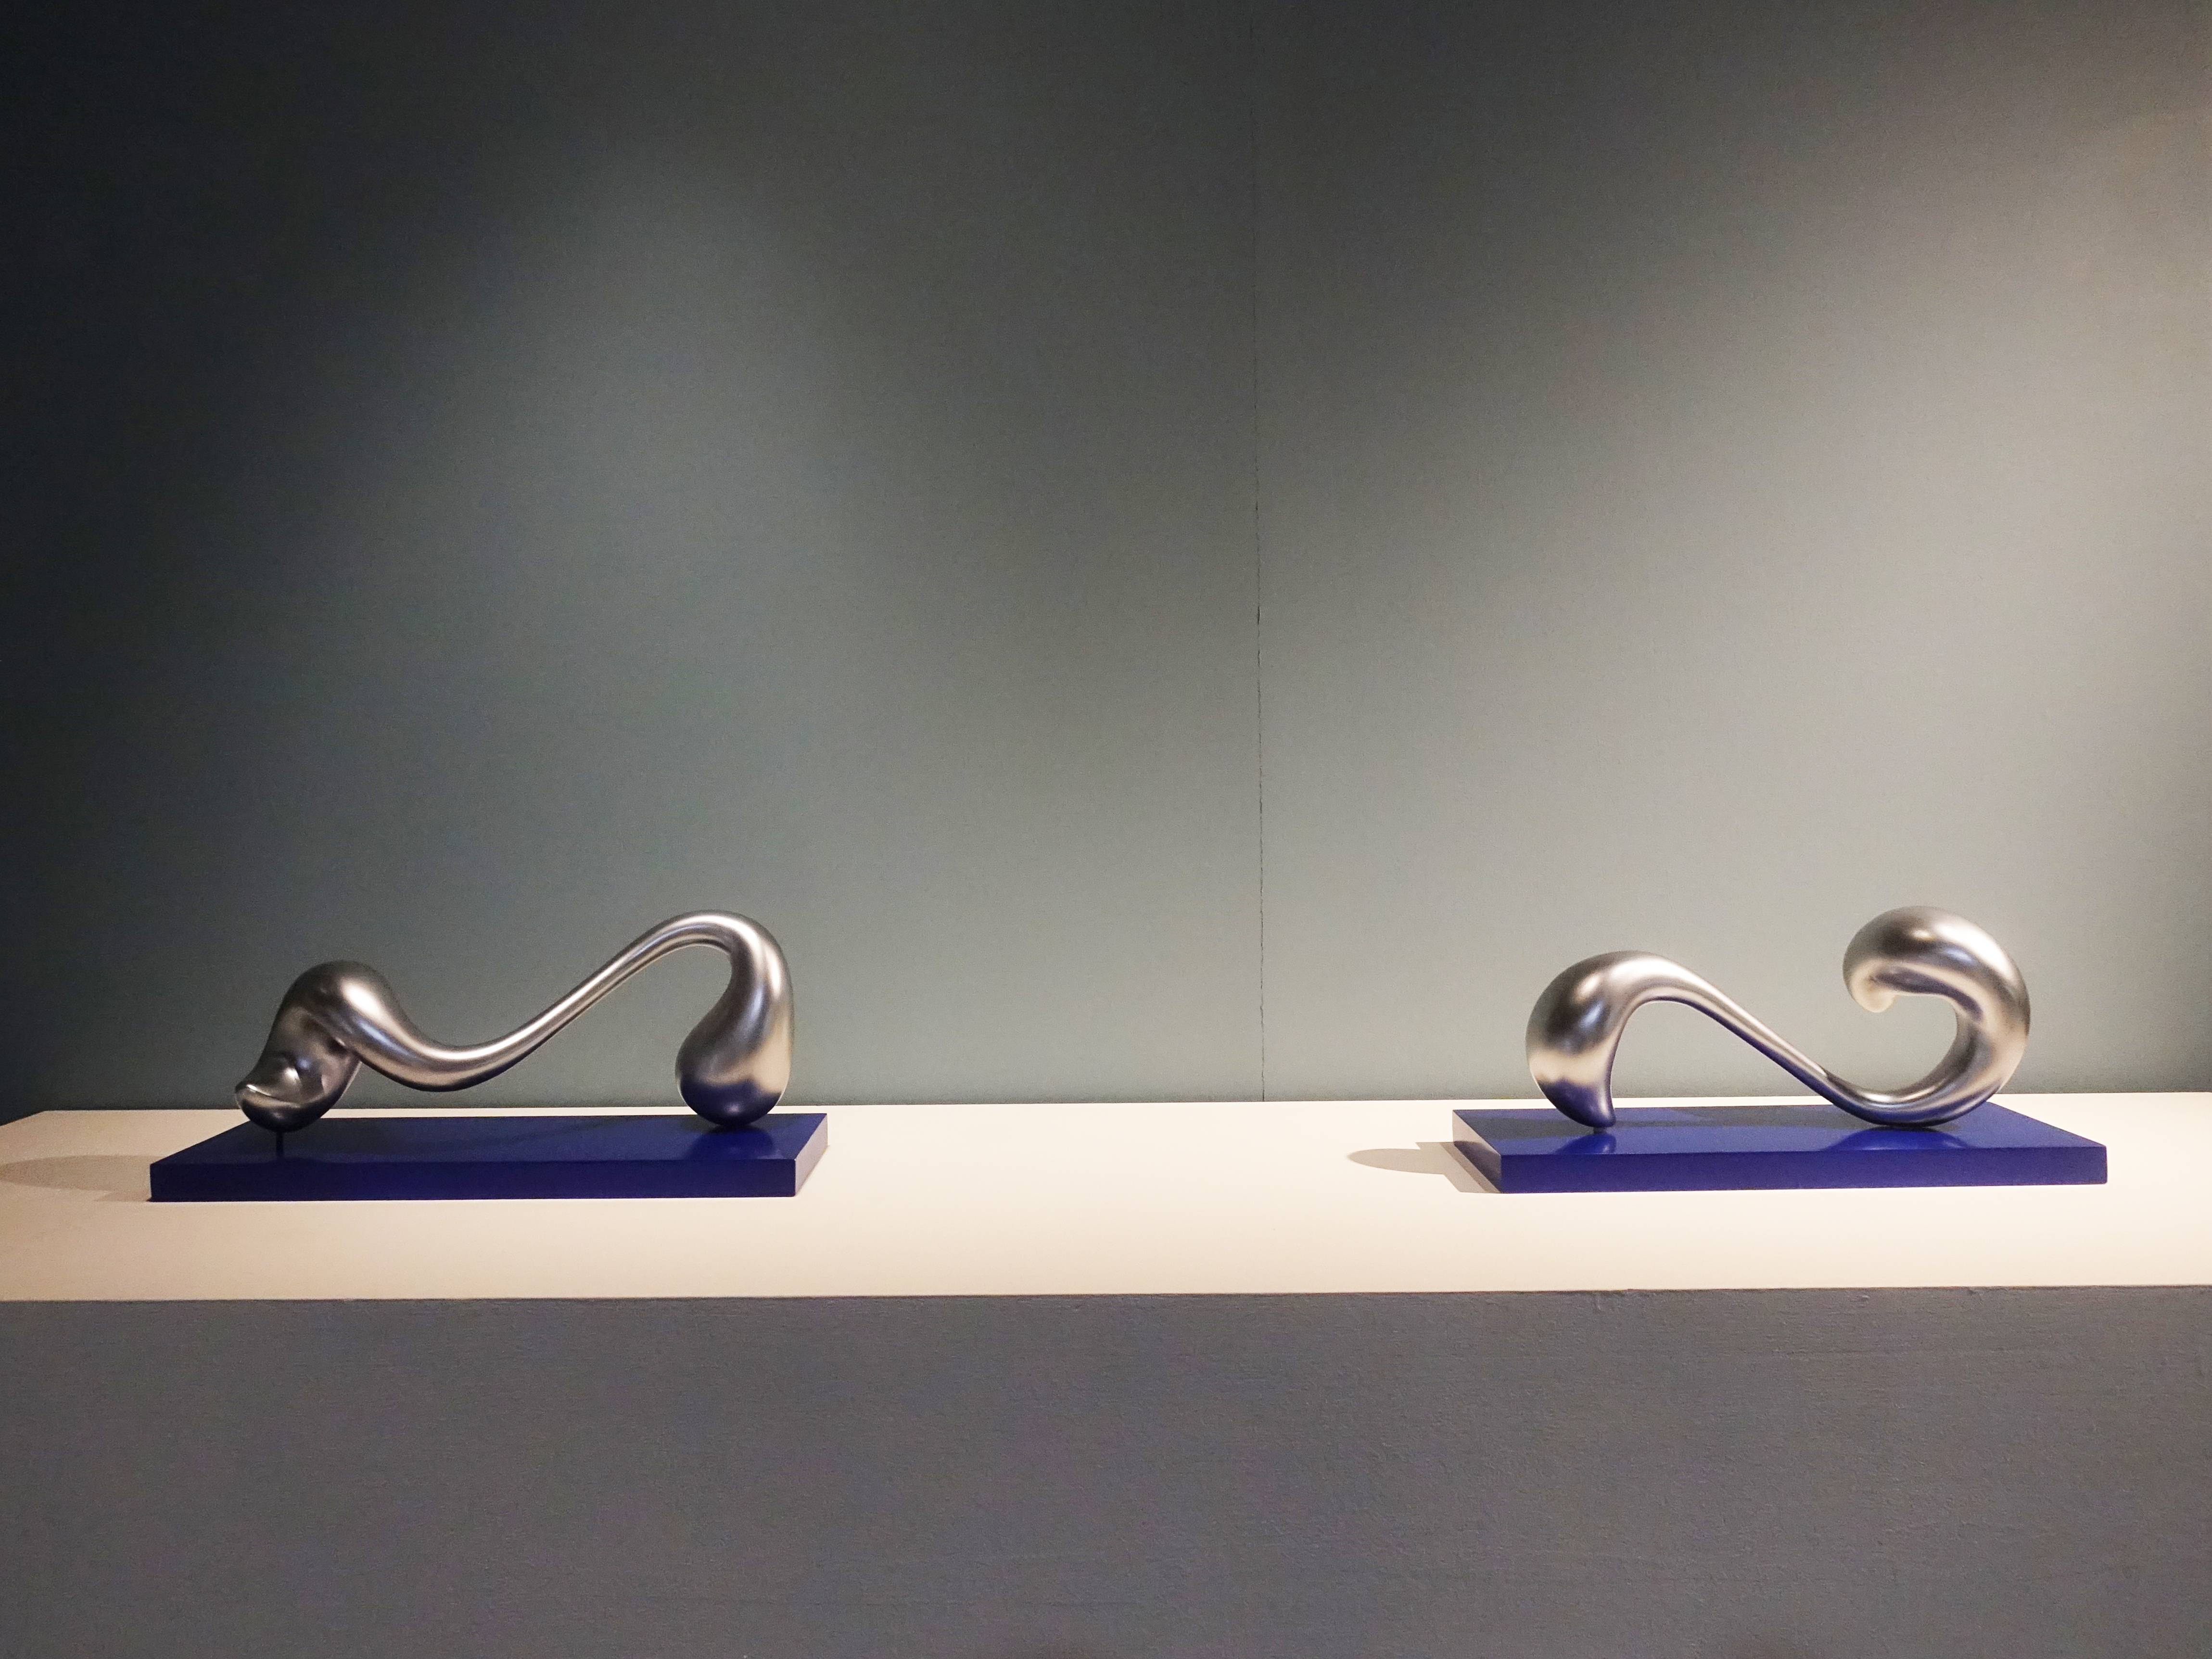 藝術家蒲浩明於人文遠雄博物館展出《波動》系列作品。